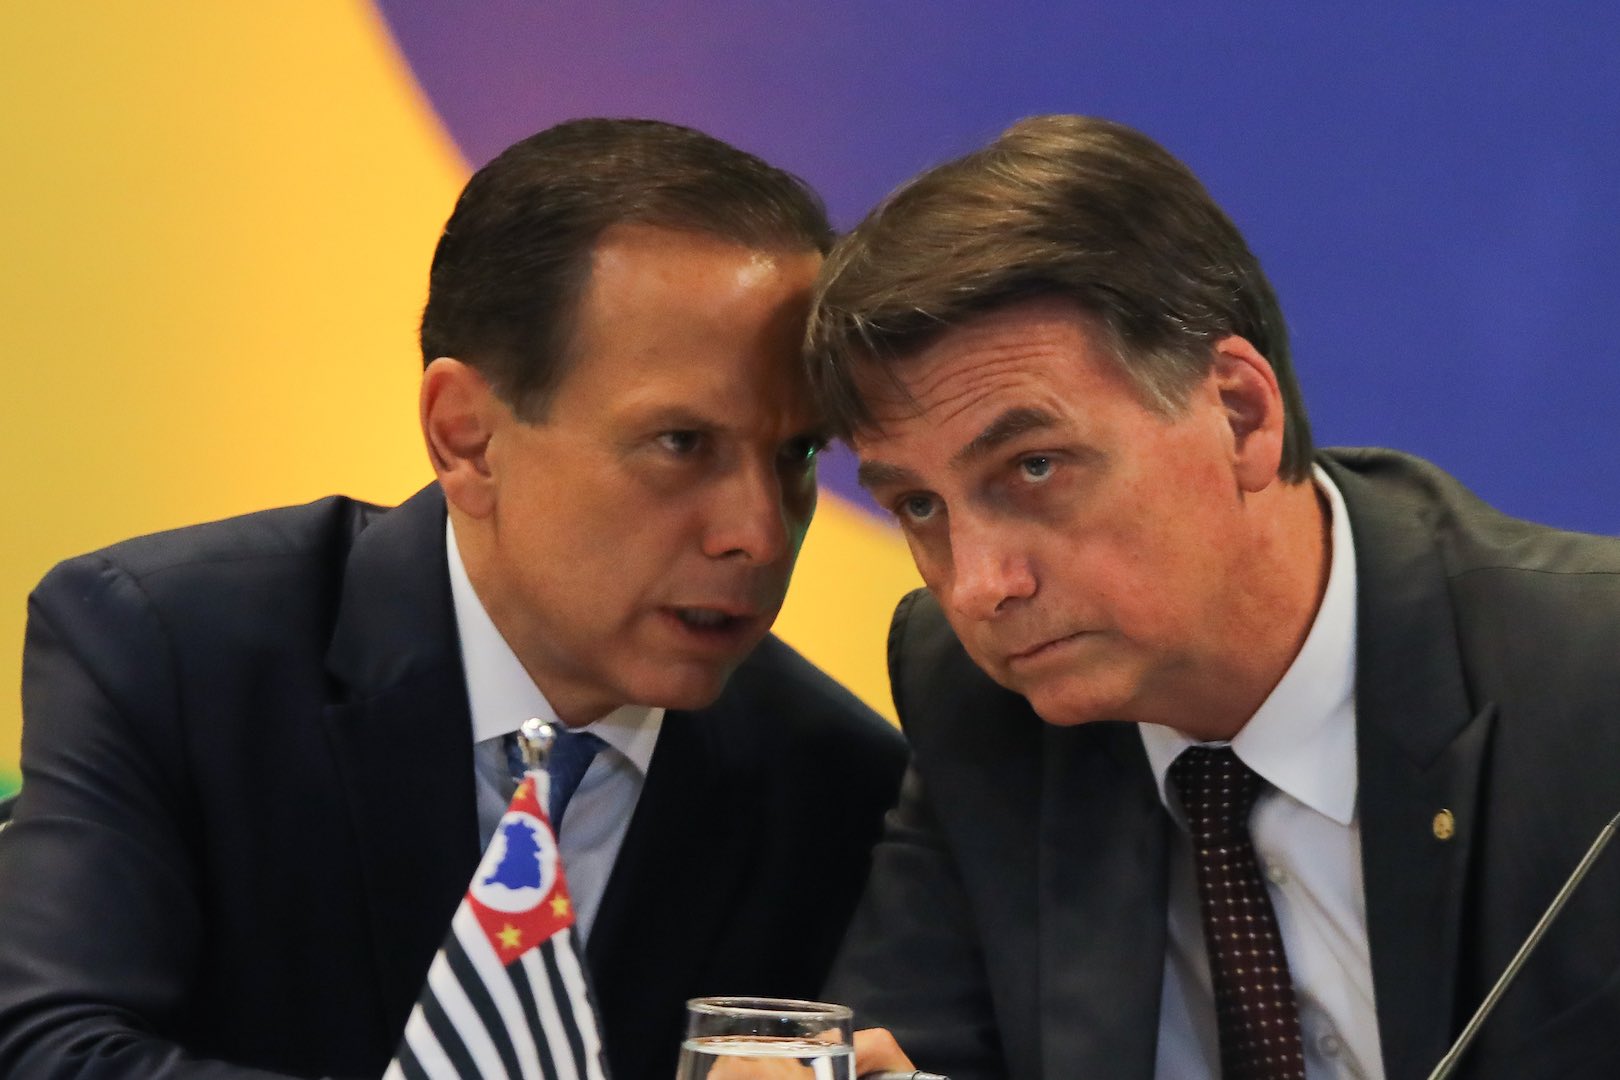 Da esquerda para a direita: João Dória, governador de São Paulo, e Jair Bolsonaro, Presidente da República. (Reprodução/Poder360)